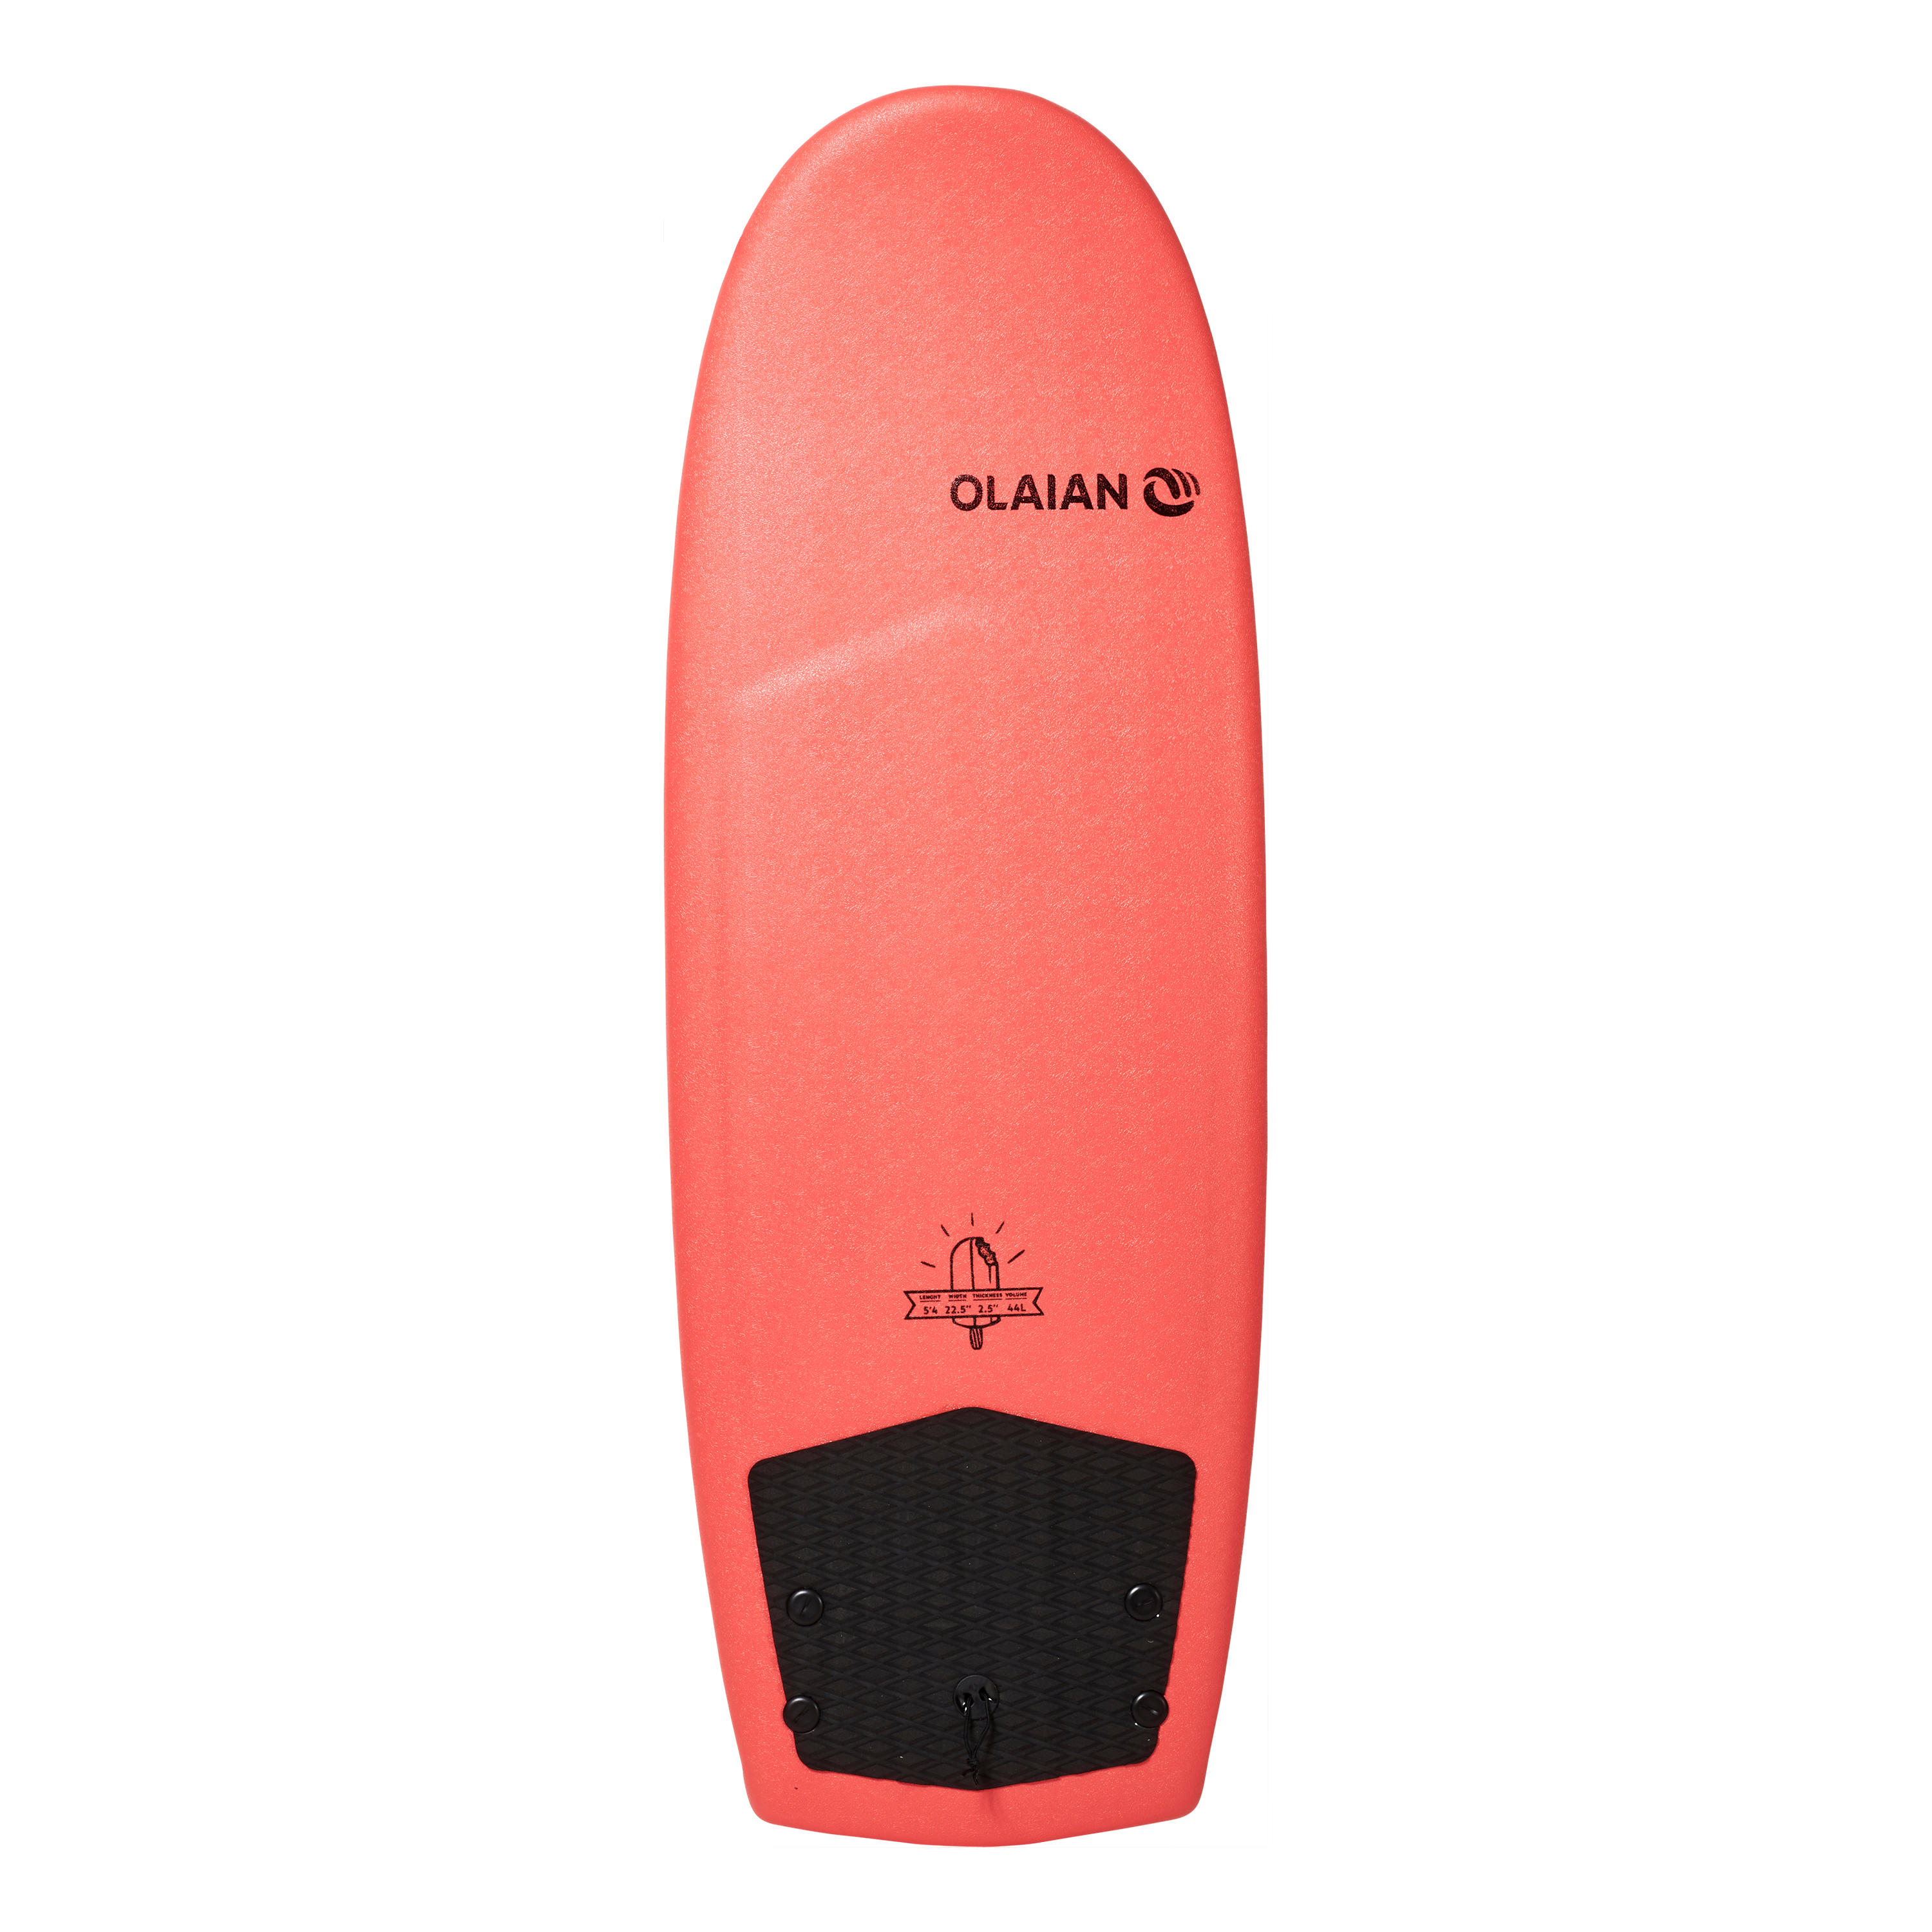 FOAM SURFBOARD 900 5'4" with 2 fins. 9/9